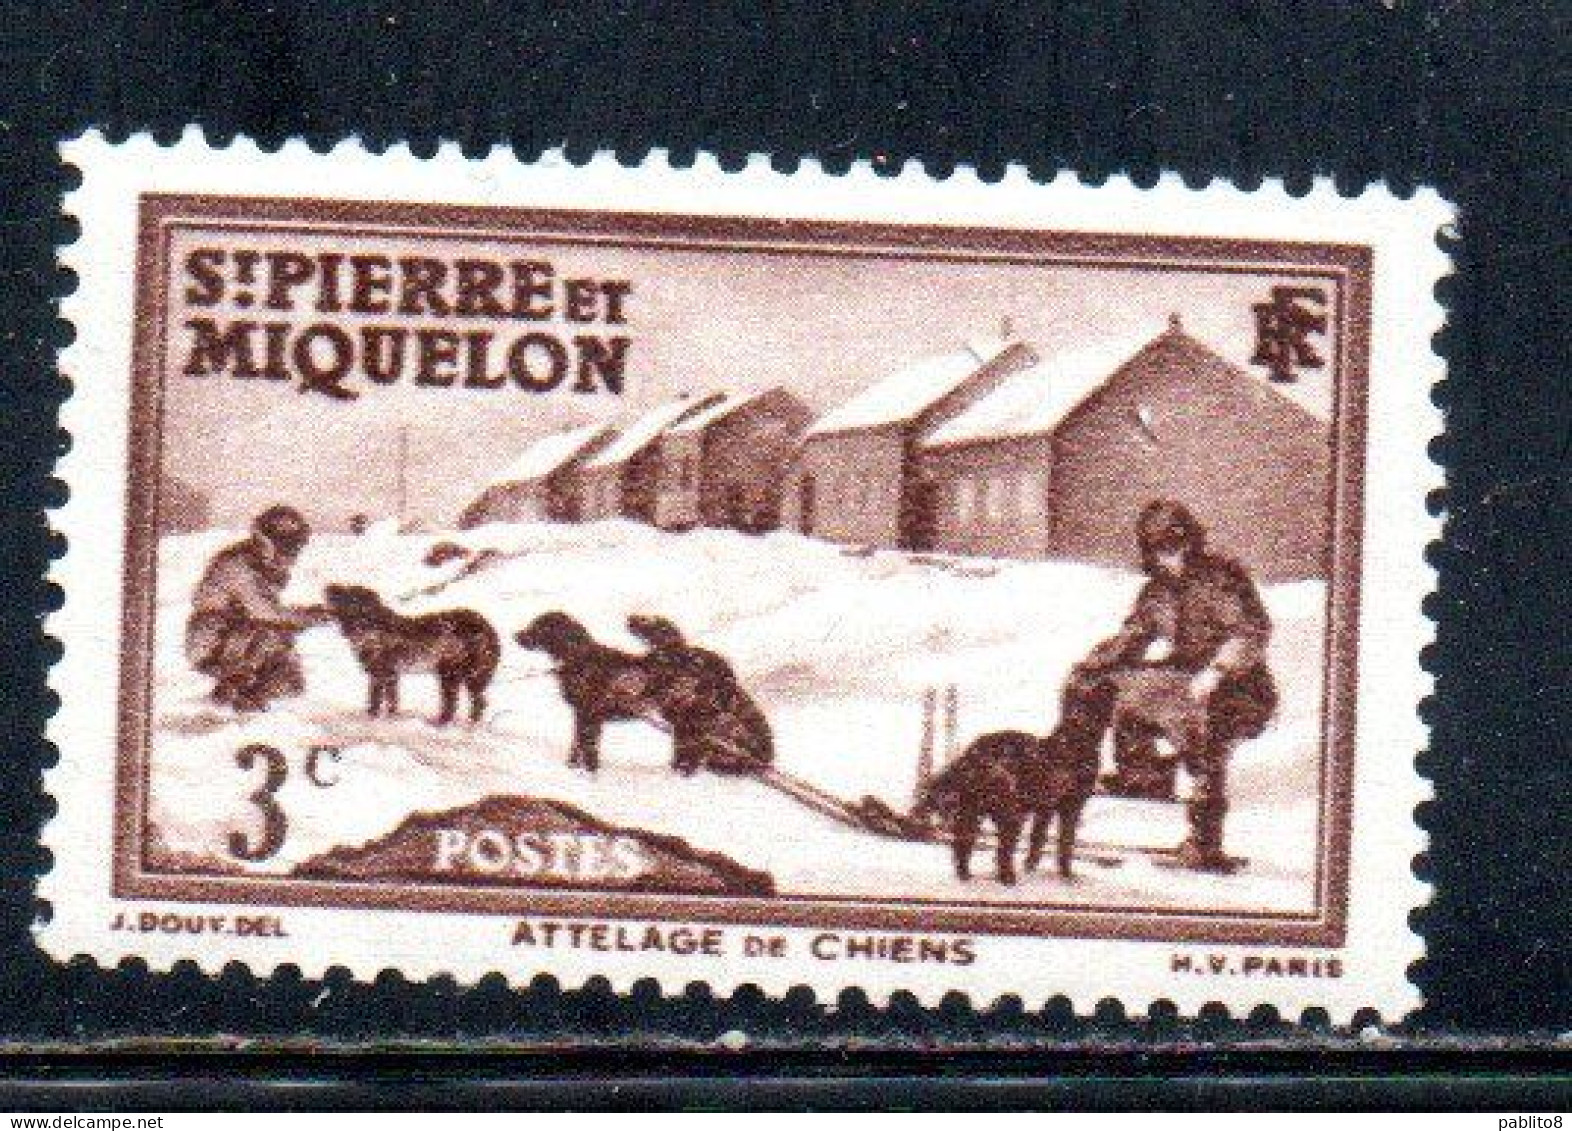 ST. SAINT PIERRE AND ET MIQUELON 1938 1940 DOG TEAM  3c MNH - Neufs